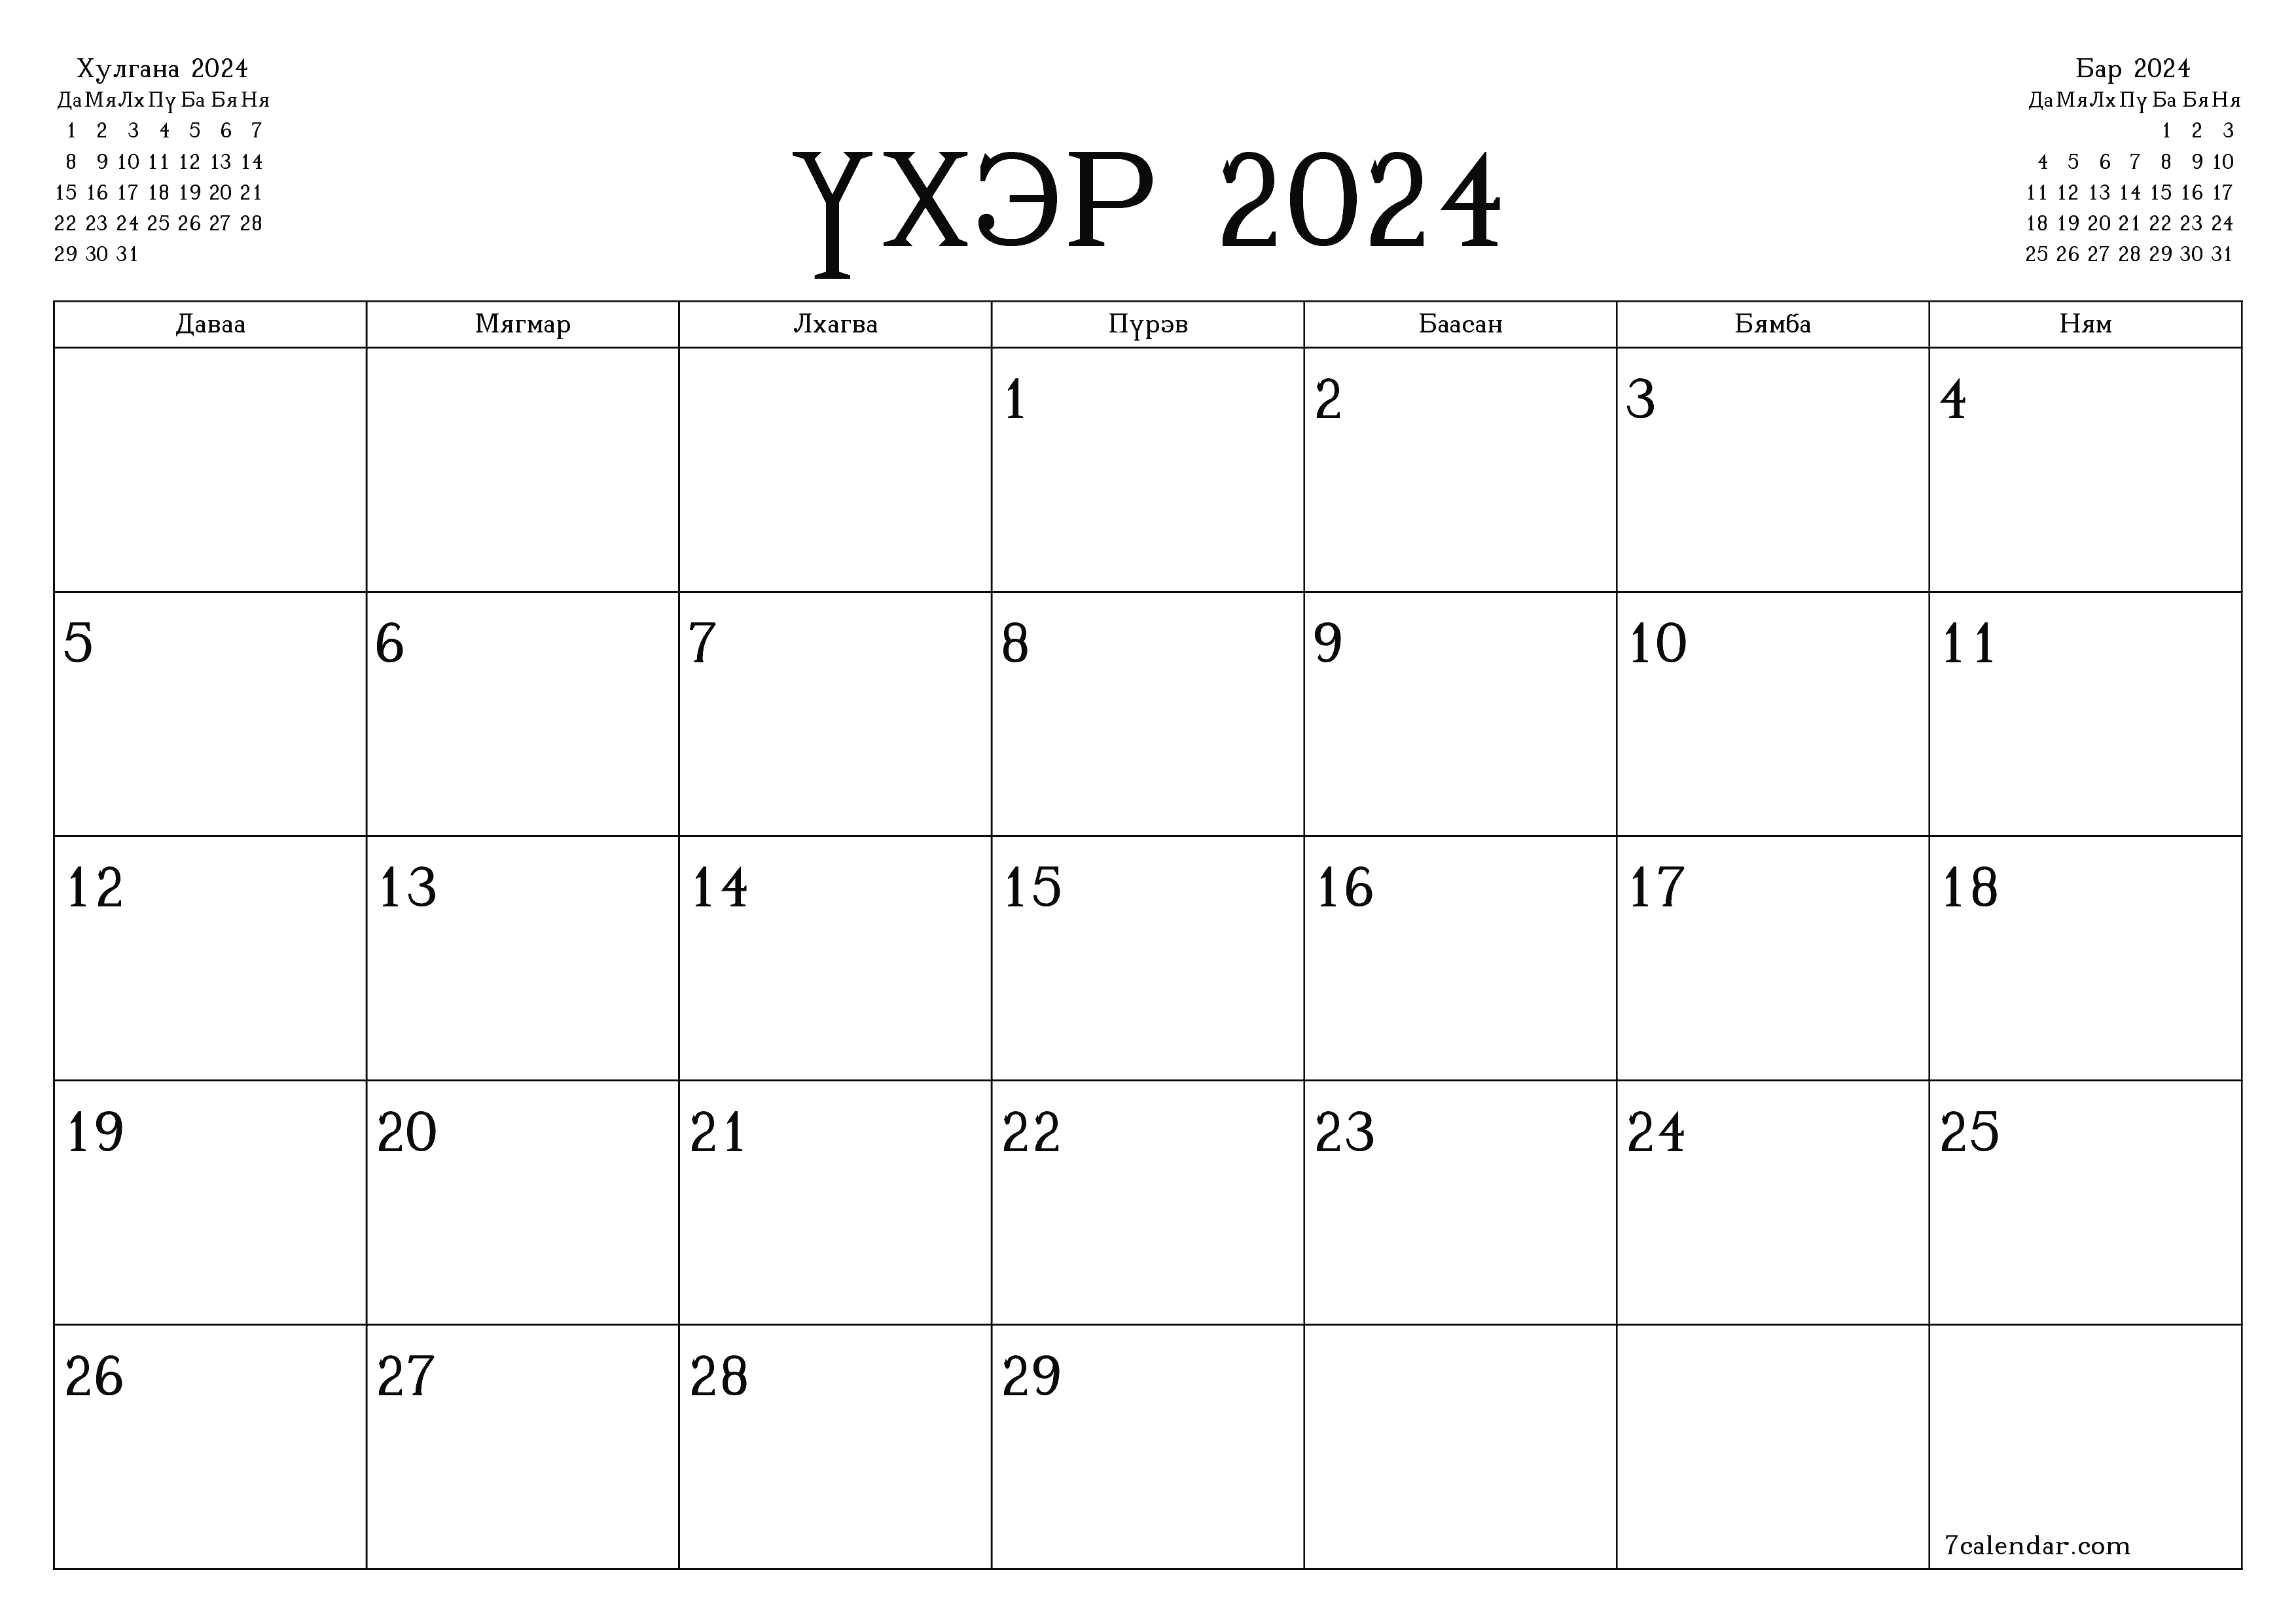 Үхэр 2024 сарын сар бүрийн төлөвлөгөөг тэмдэглэлтэй хоосон байлгаж, PDF хэлбэрээр хадгалж, хэвлэ PNG Mongolian